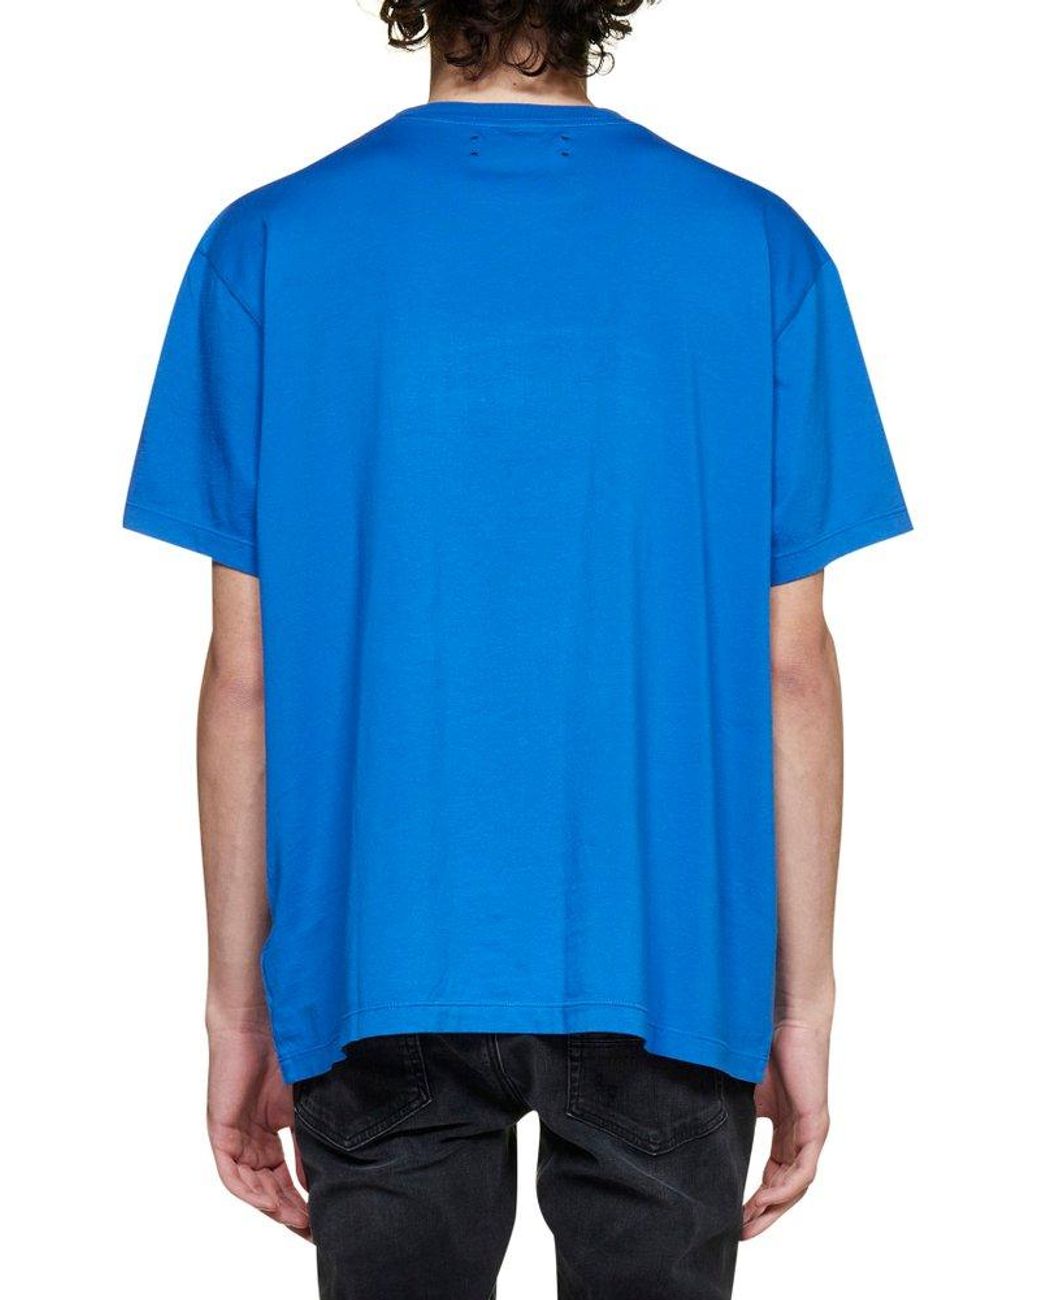 Men's Cotton Amiri T-Shirt MC Stan Best Rapper T-Shirt - Sky Blue  (KDB-260717857) - KDB Deals